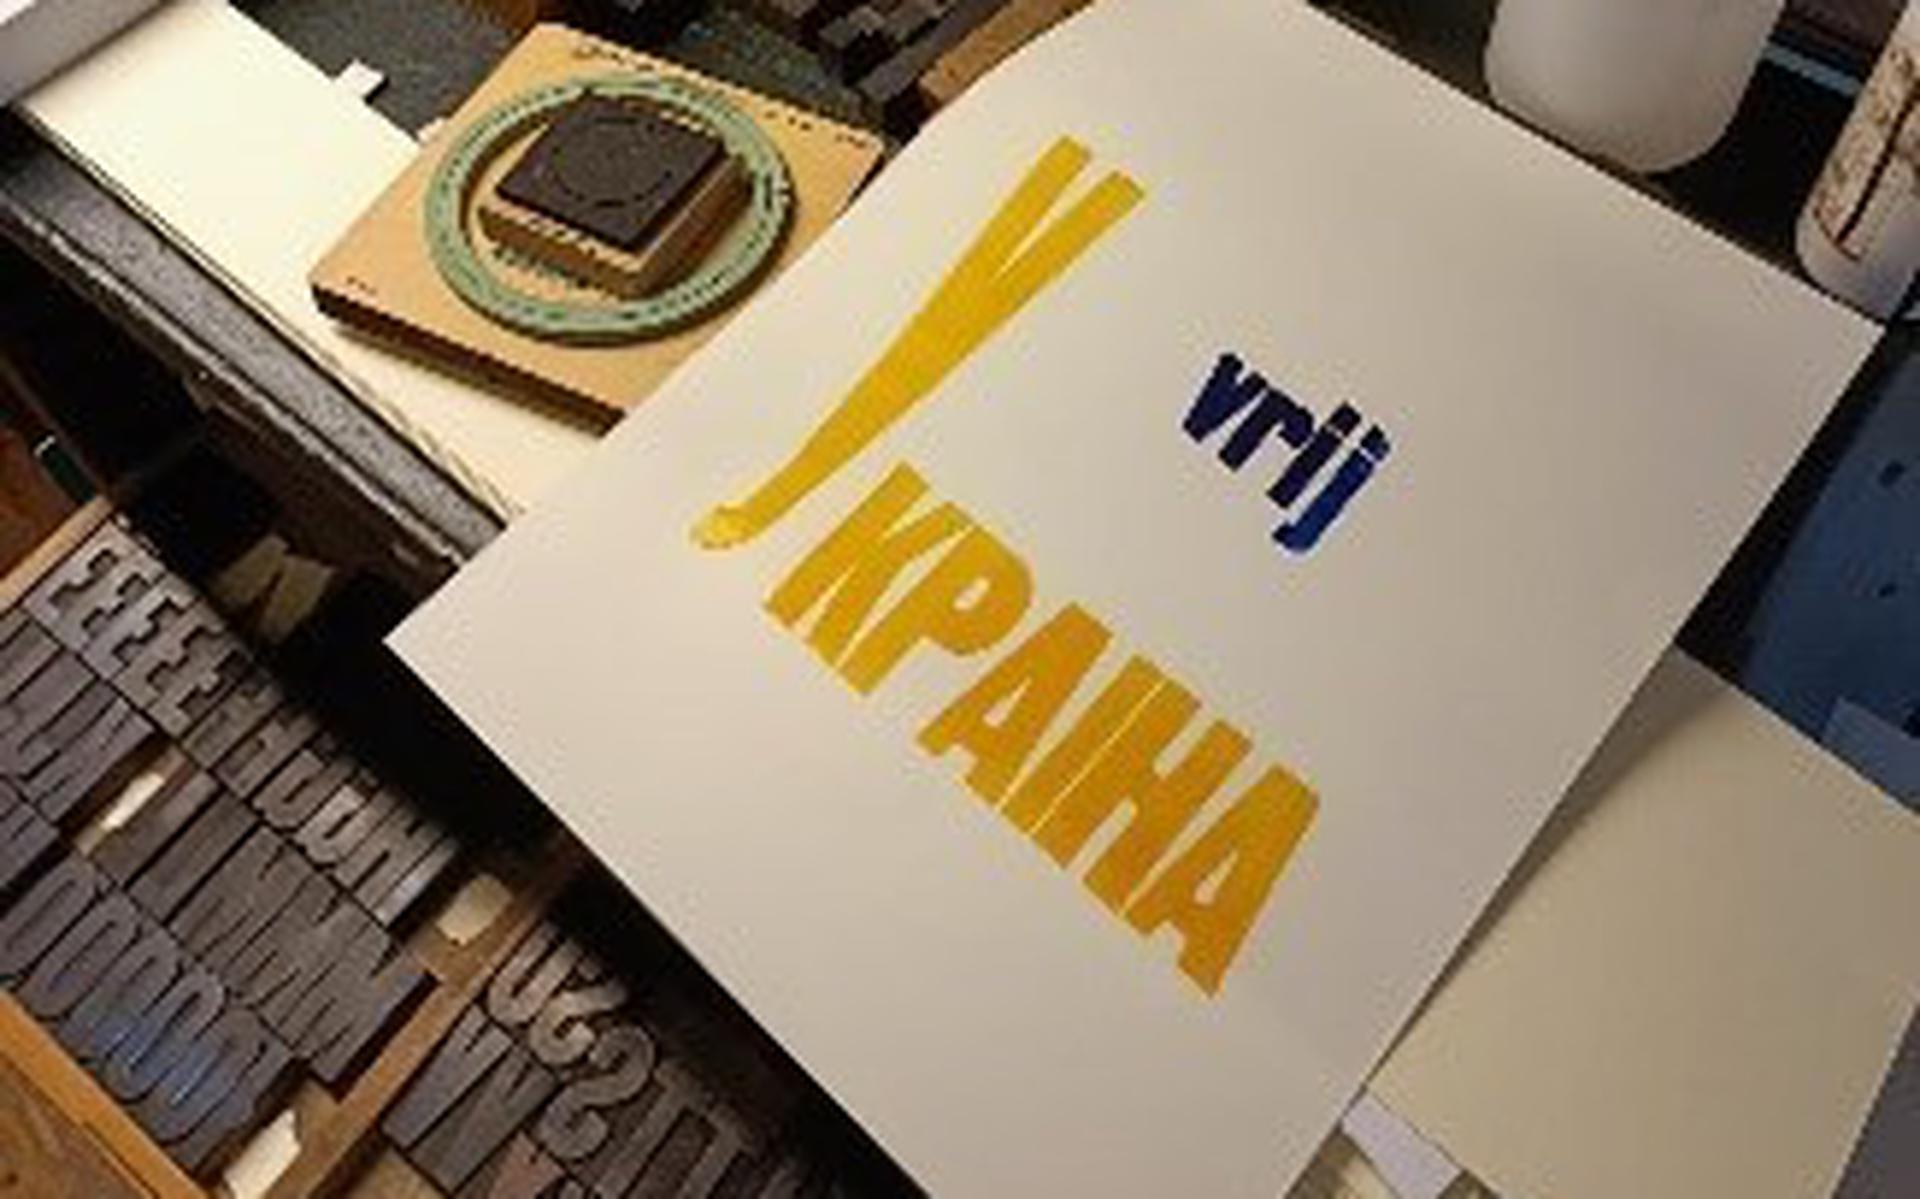 De leerlingen drukten 'Vrij Oekraïne' op het papier.